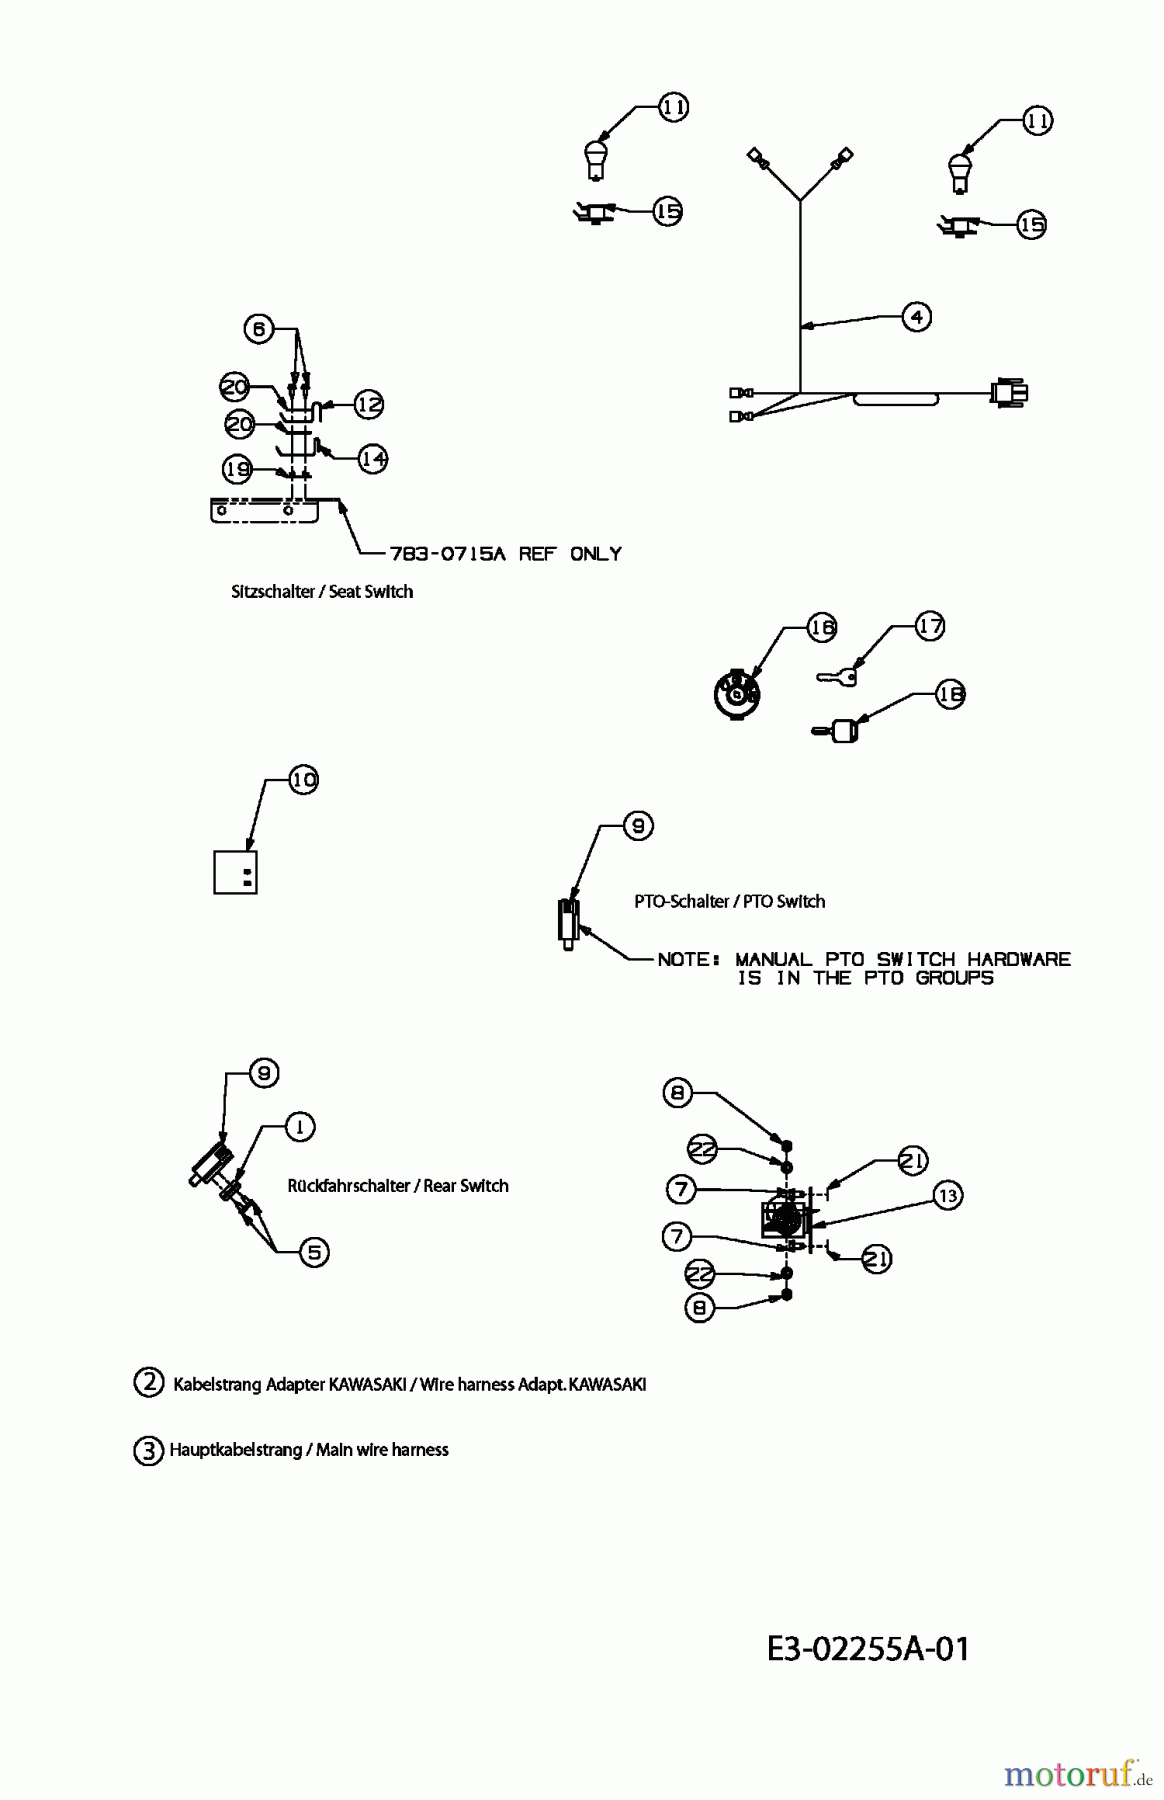  Gutbrod Rasentraktoren DLX 107 SALK 13AI606G690  (2004) Elektroteile